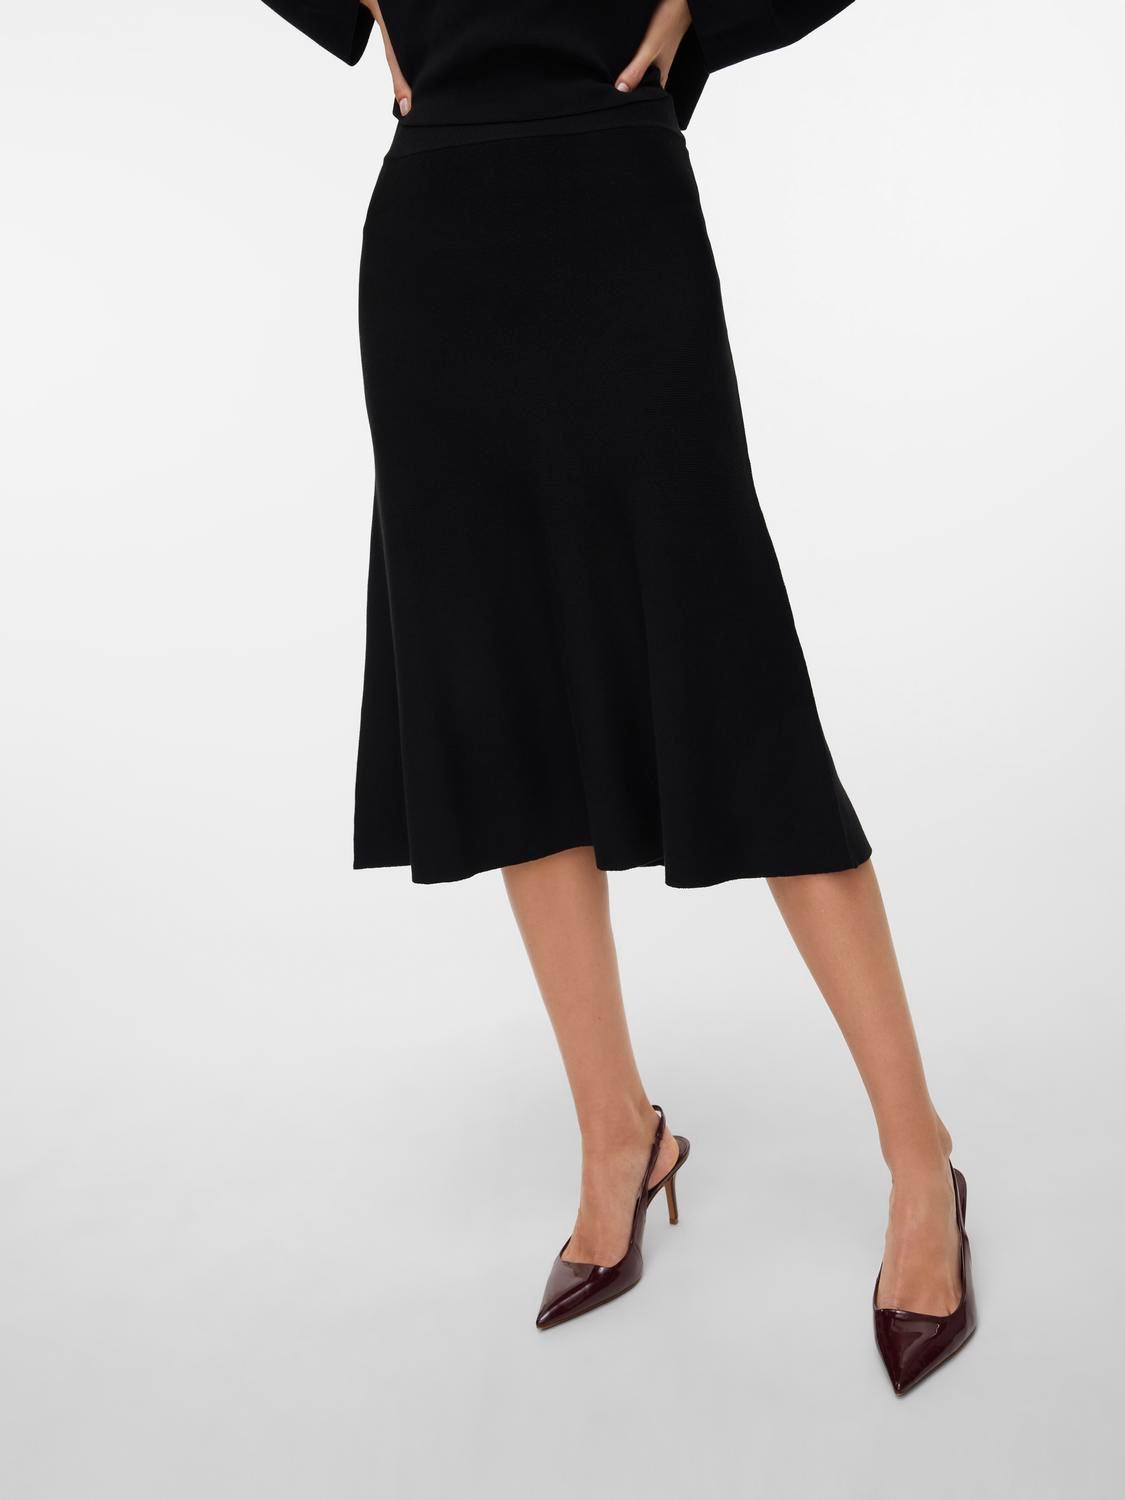 Vero Moda VMINA Midi skirt -Black - 10300366